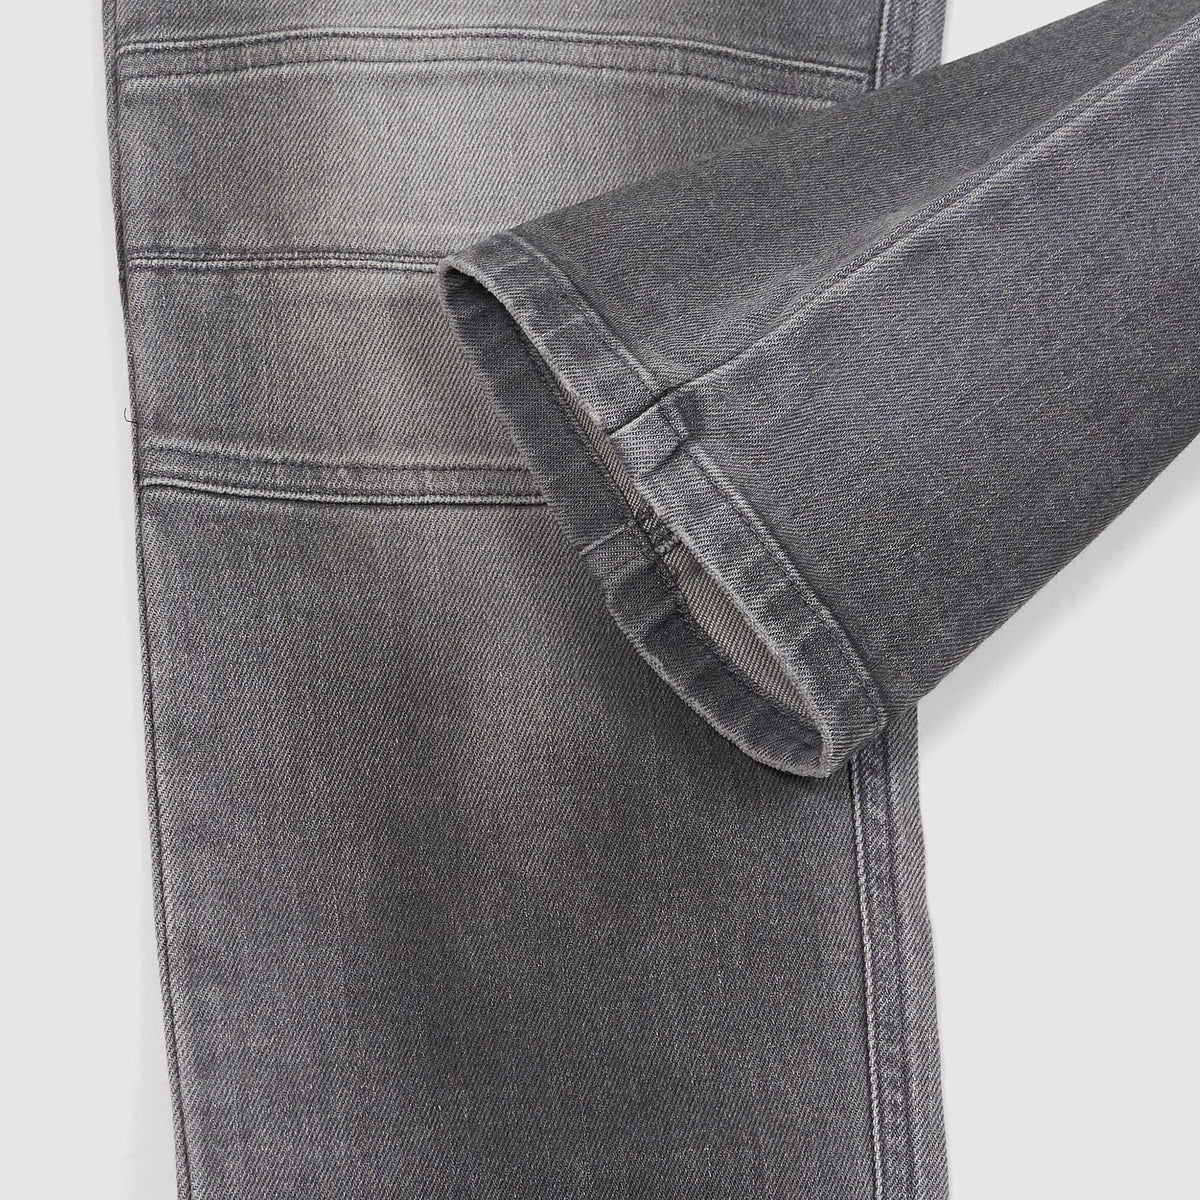 Belstaff 5-Pocket Heavy Washed Black Denim Jeans